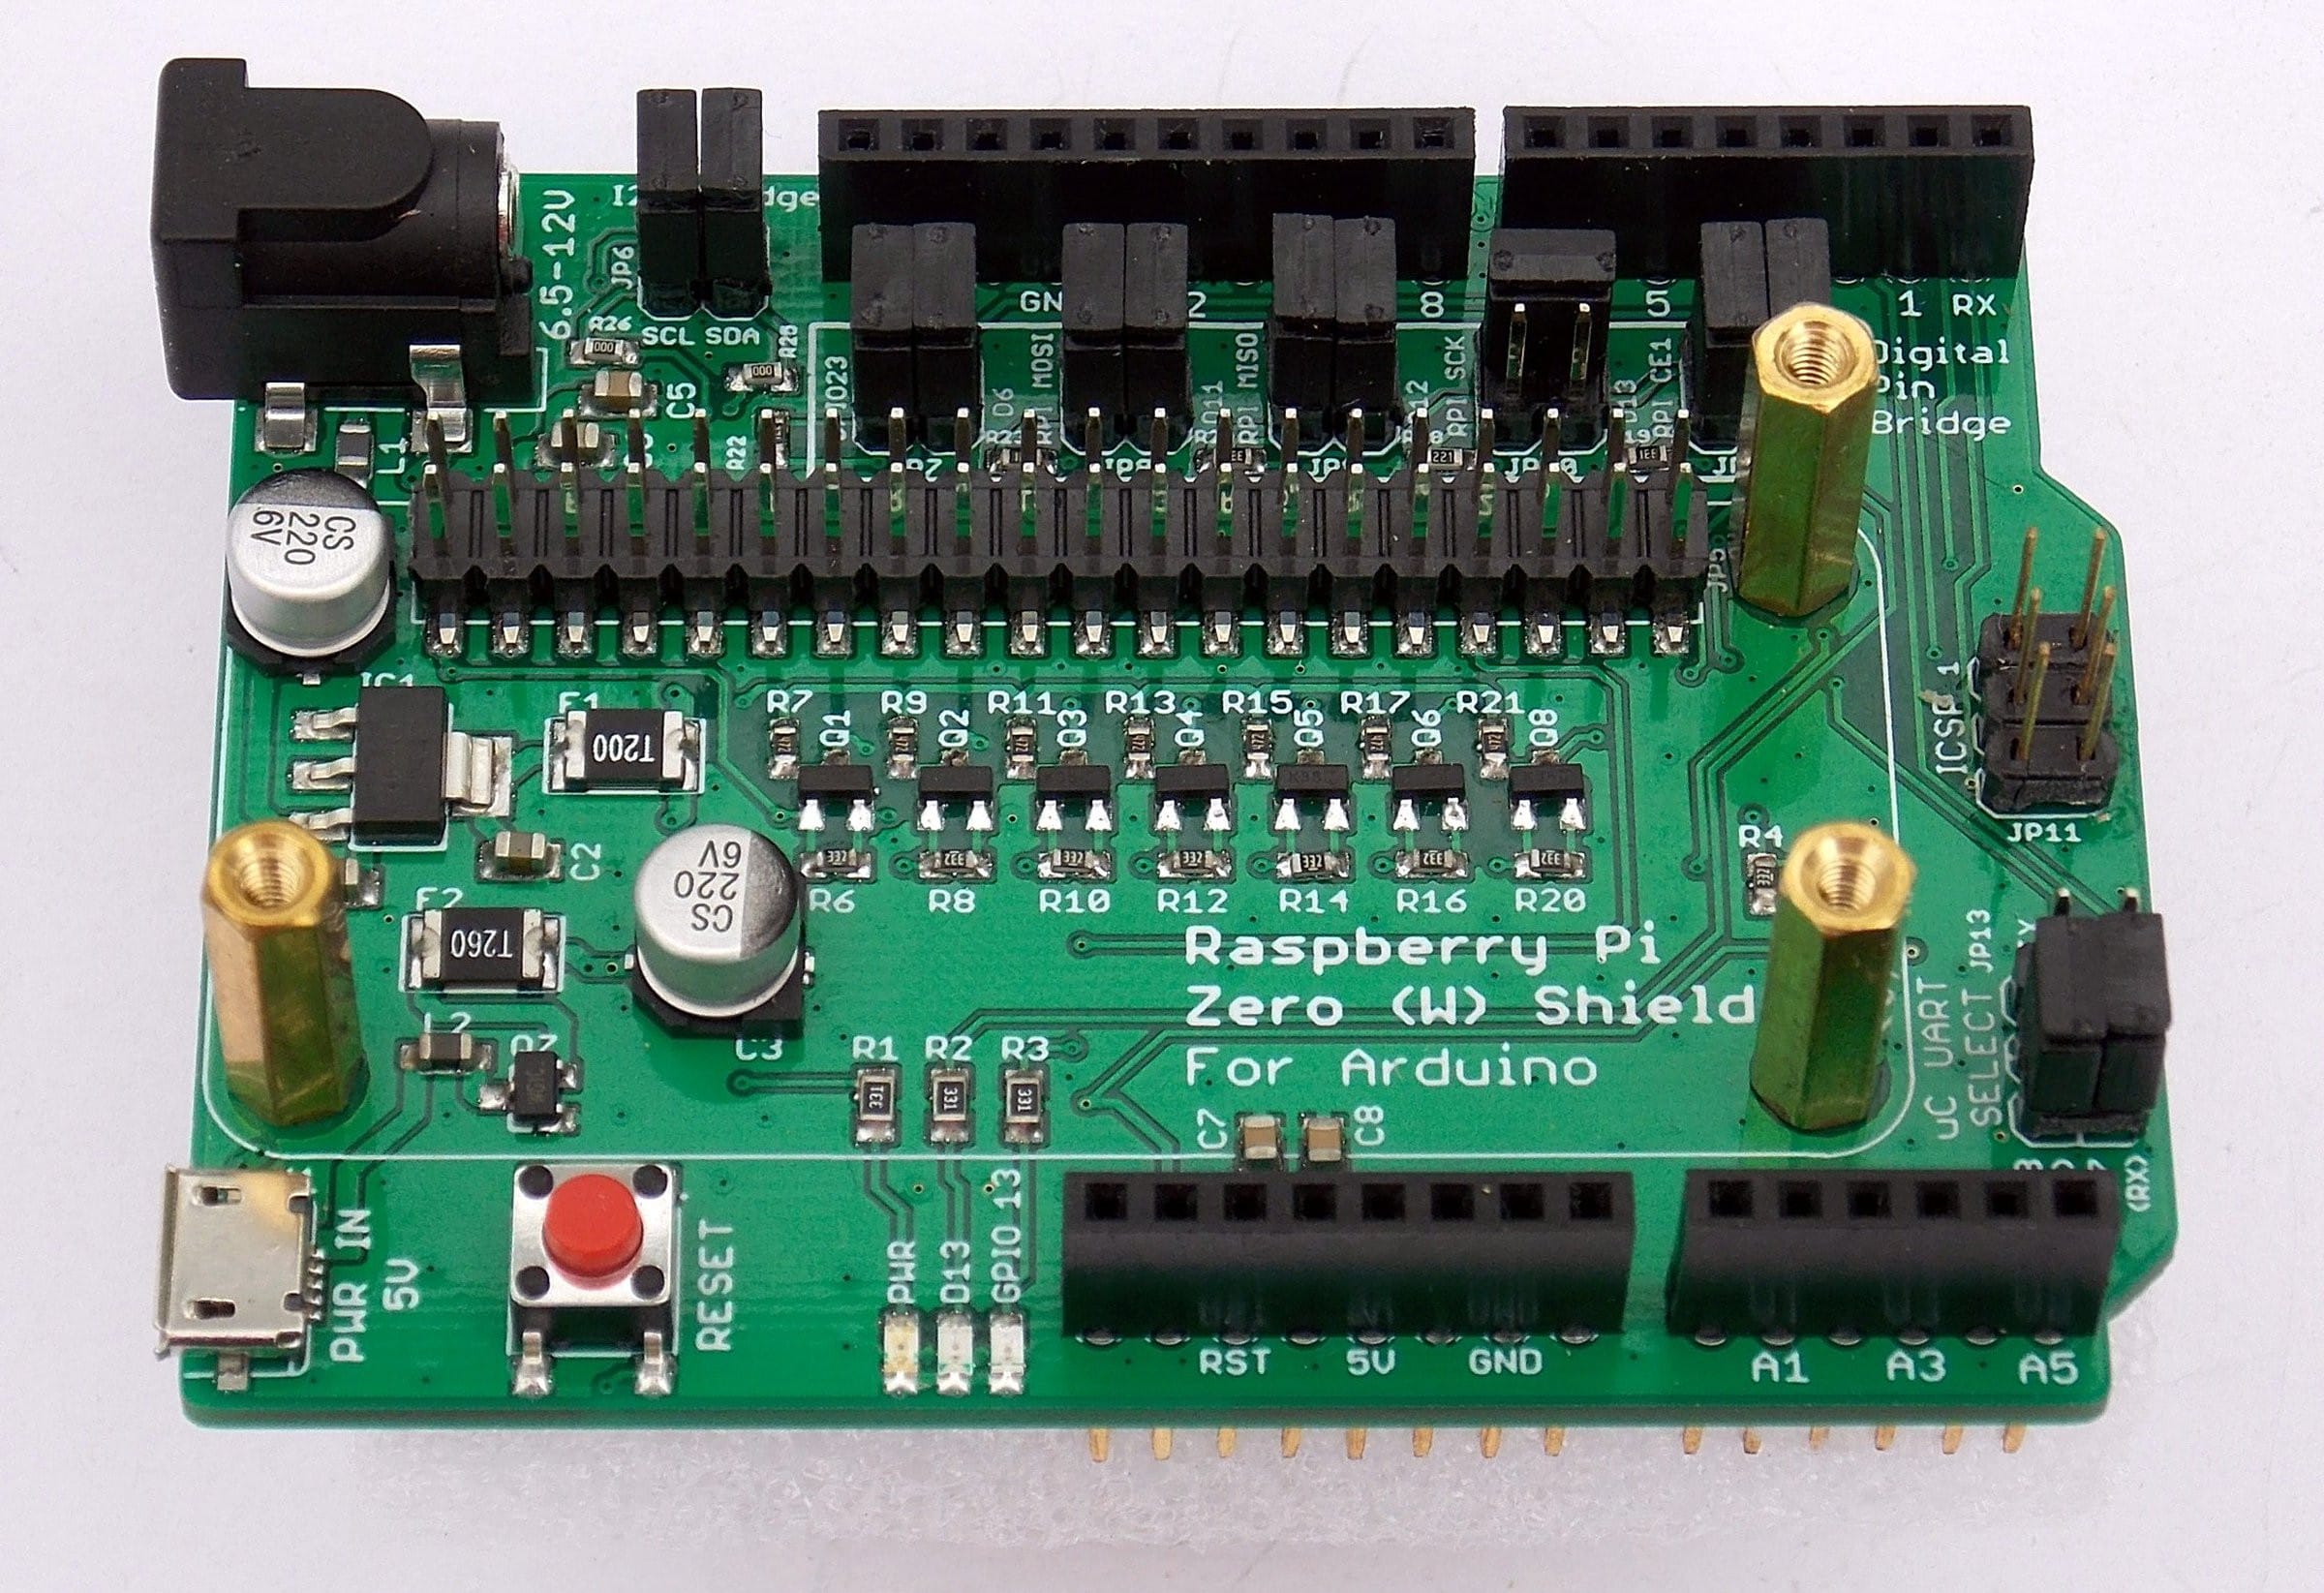 Raspberry Pi Zero W Shield For Arduino Is An Arduino Uno Baseboard For Rpi Zero Board Cnx 2356